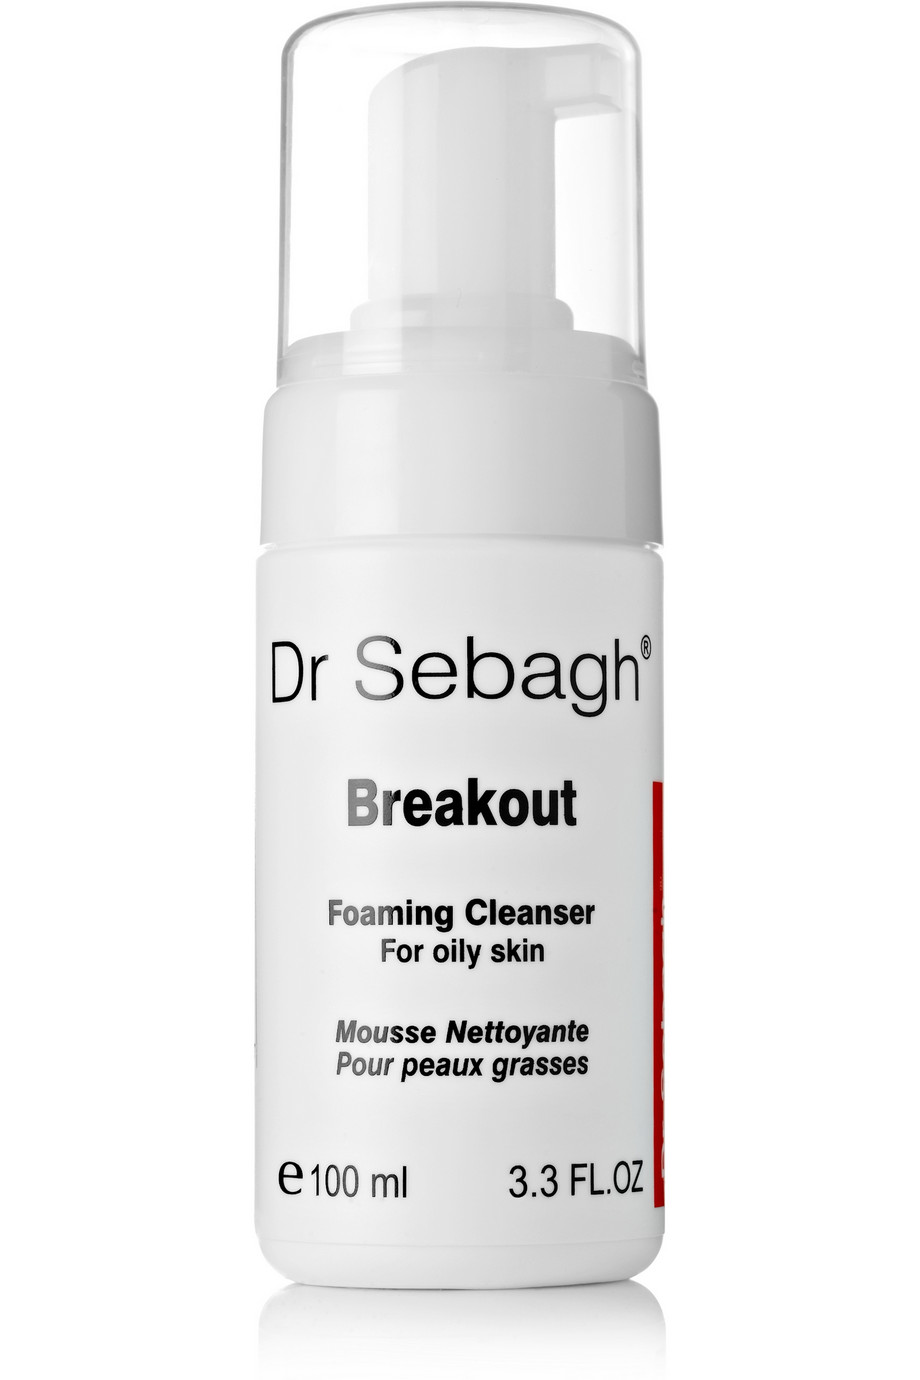 Dr Sebagh Breakout Foaming Cleanser 100ml. - интернет-магазин профессиональной косметики Spadream, изображение 17736